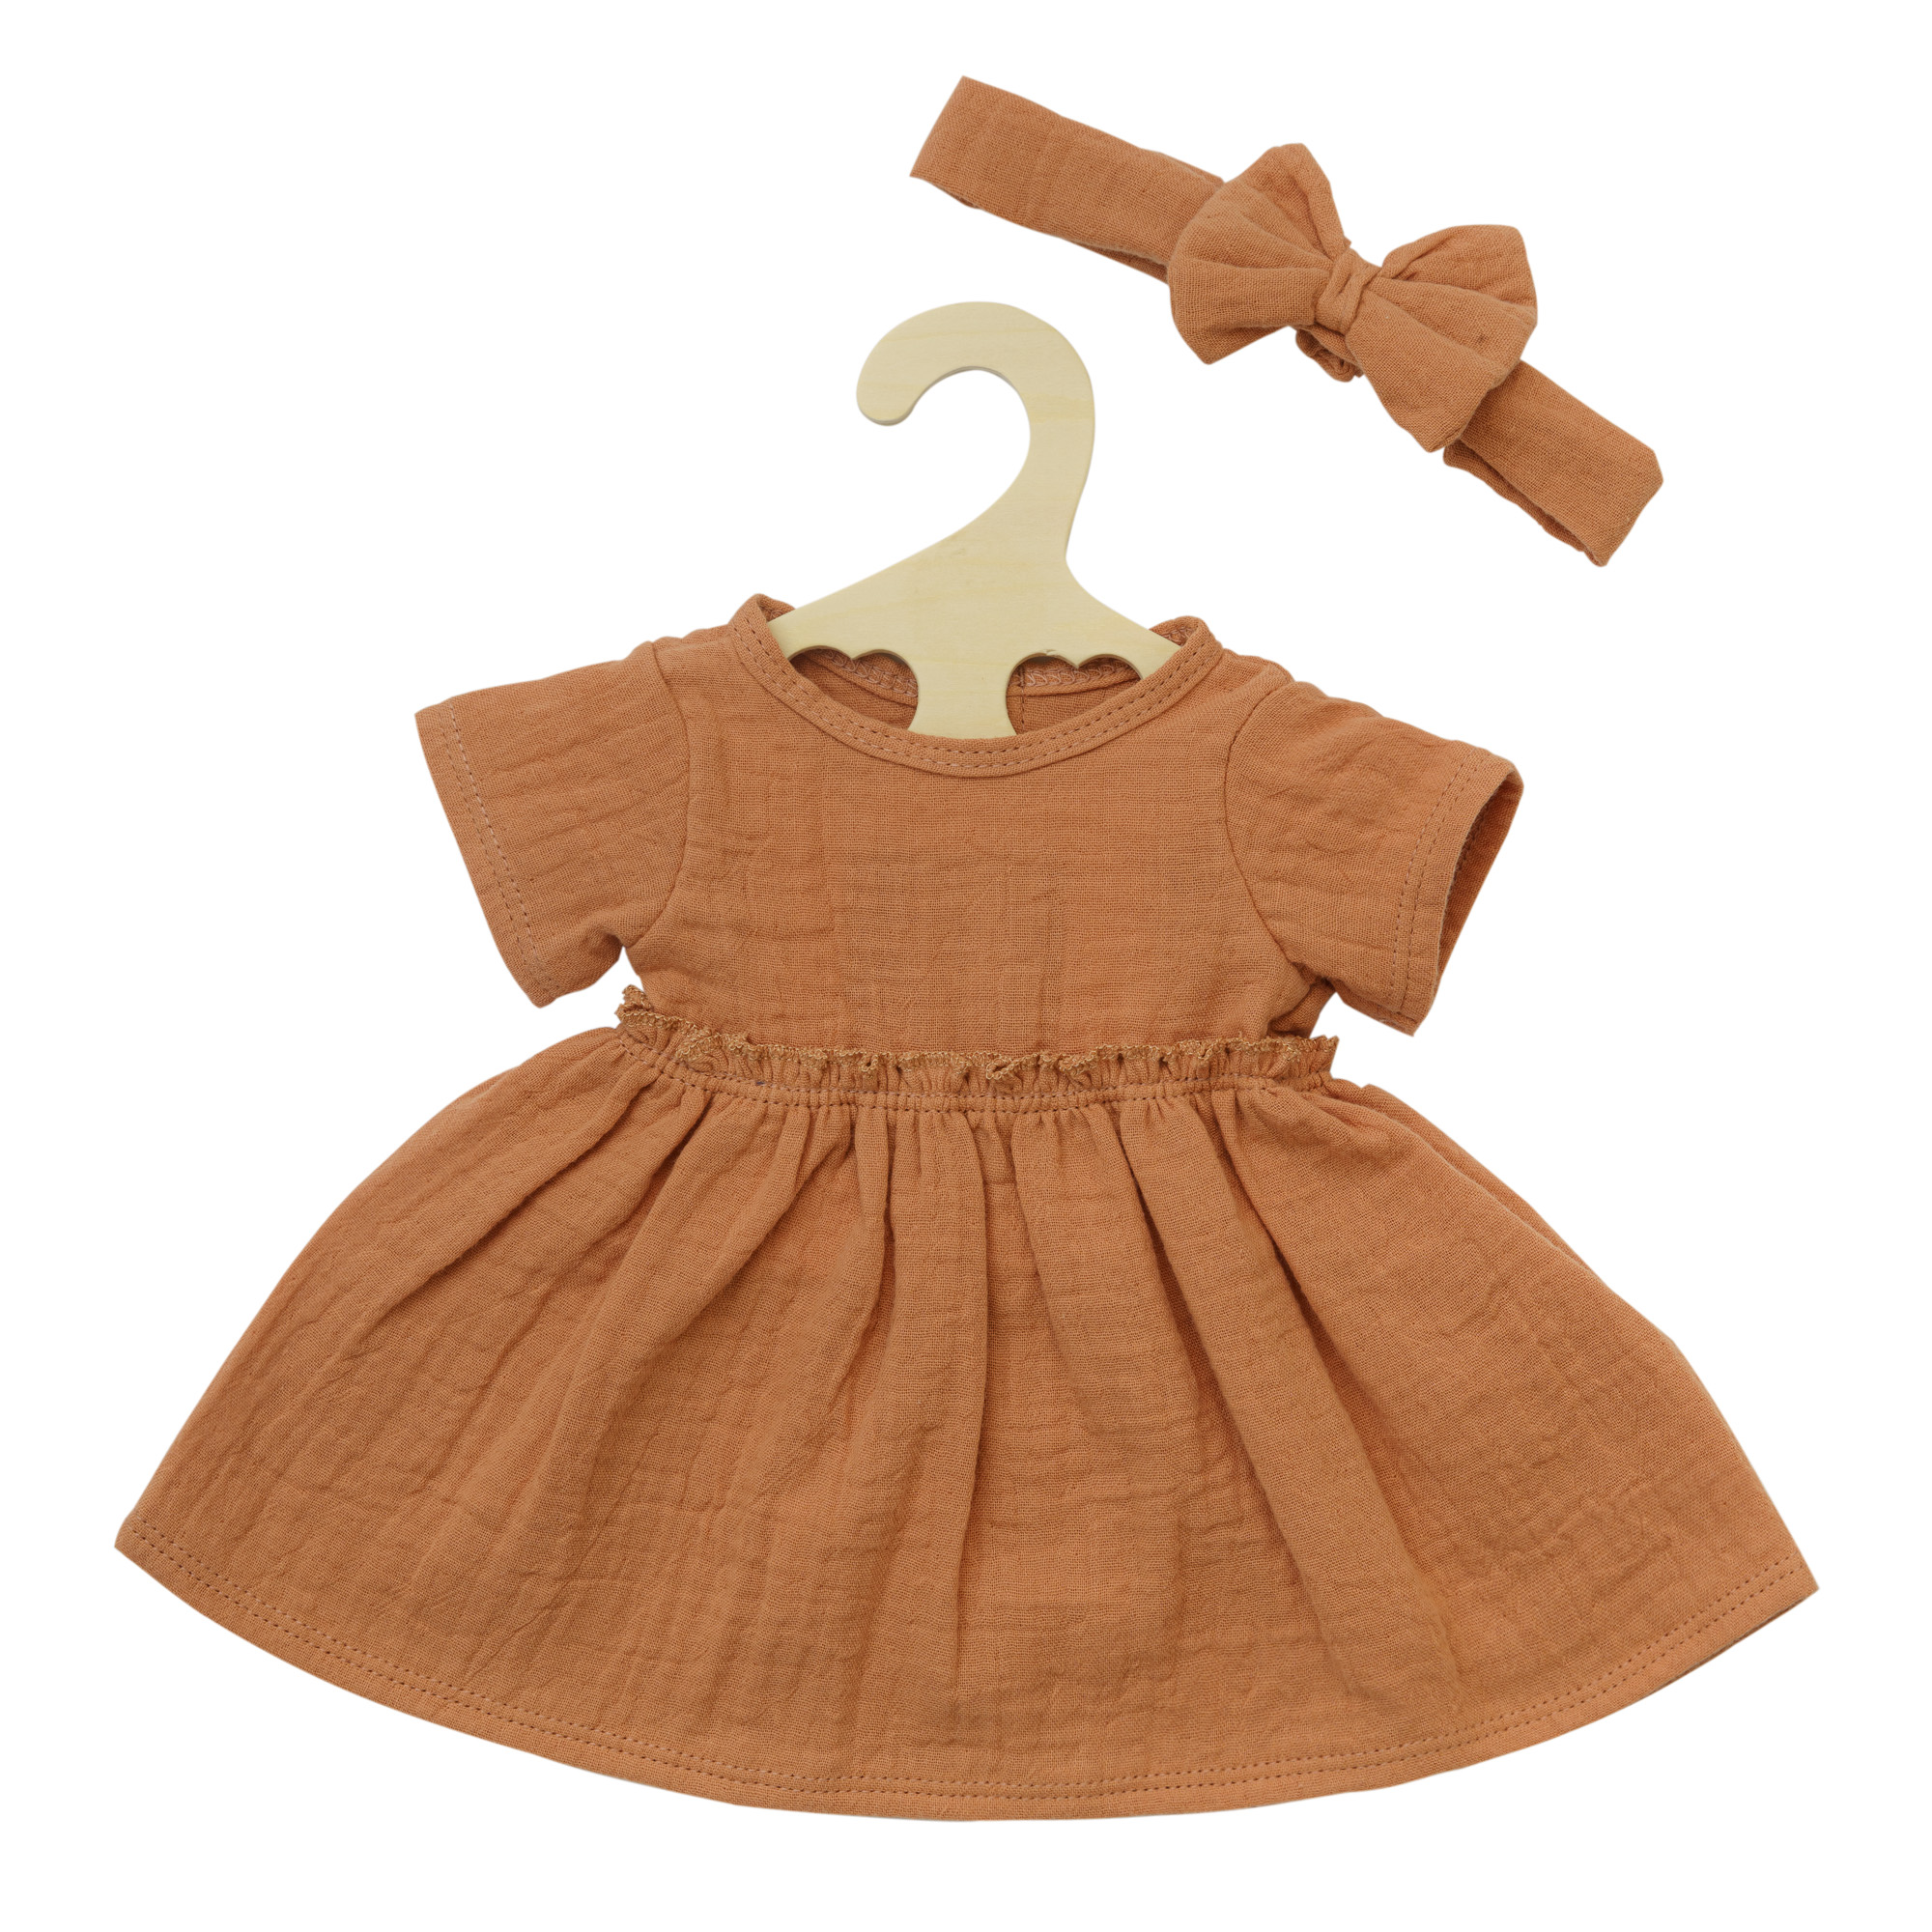 Puppenkleid aus 100 % Bio-Baumwolle mit Rüschen und Haarband, karamell, 2-teilig, Gr. 35-45 cm